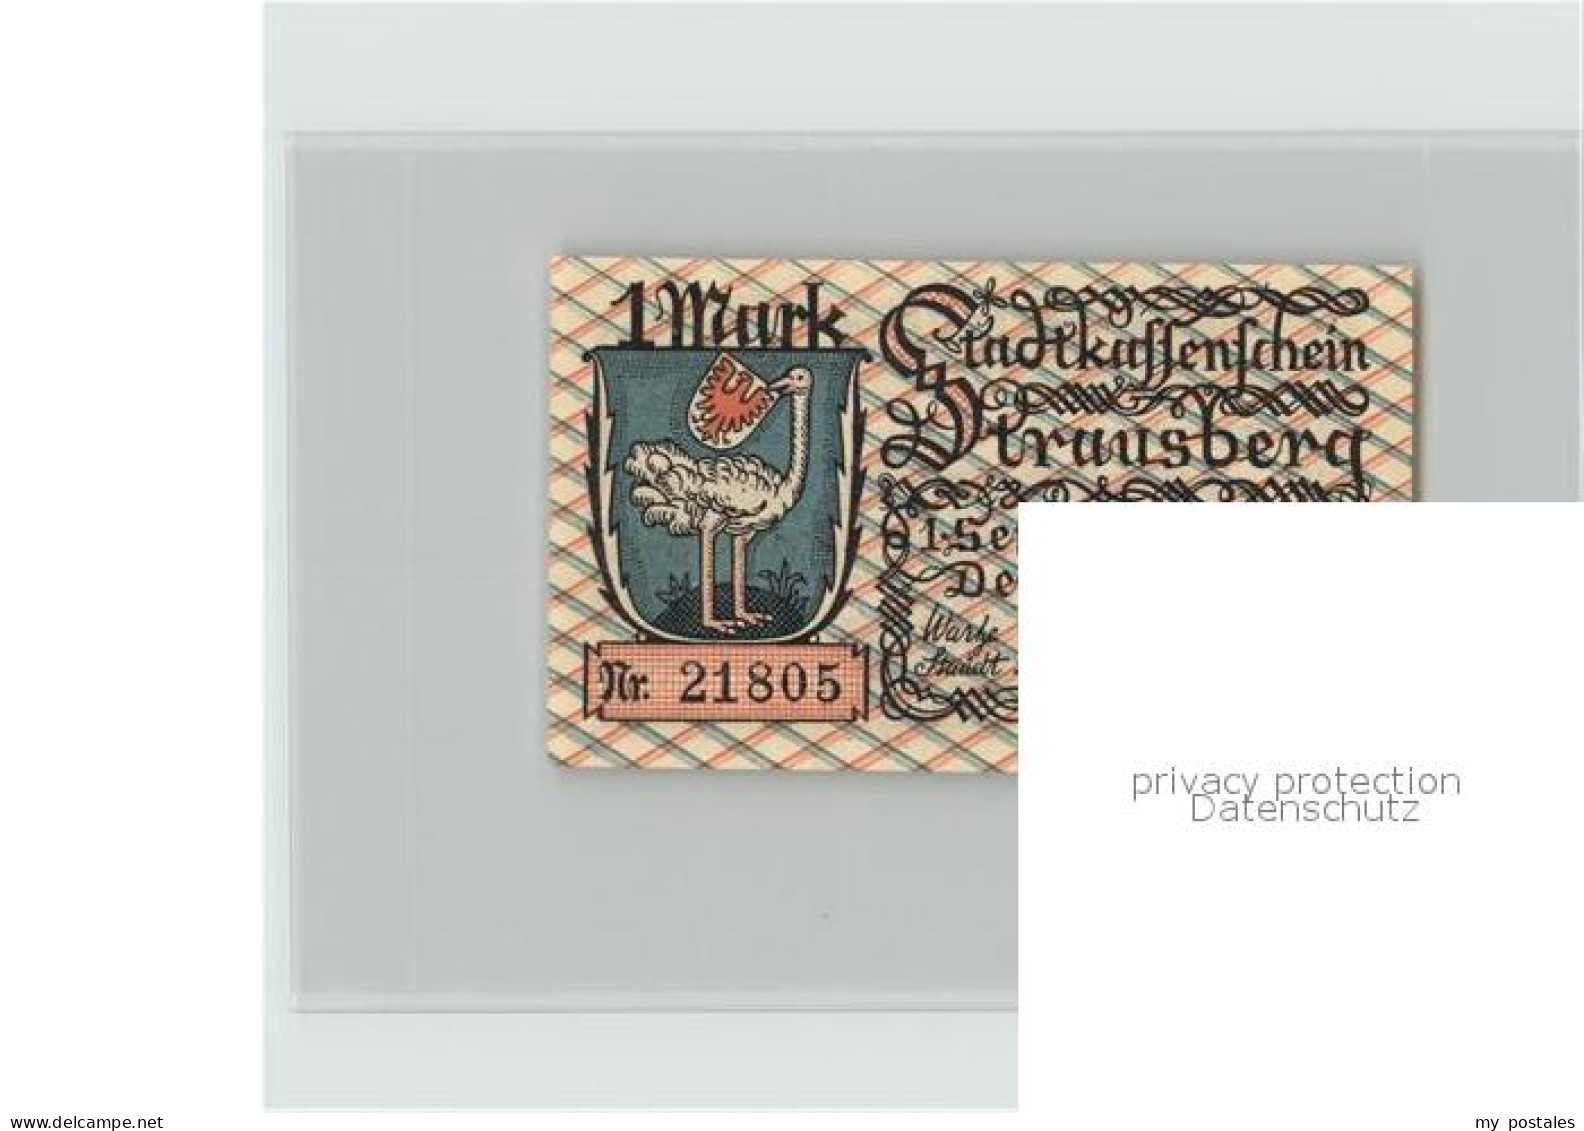 42381425 Strausberg Brandenburg Stadtkassenschein 1 Mark Wappen  Strausberg - Strausberg